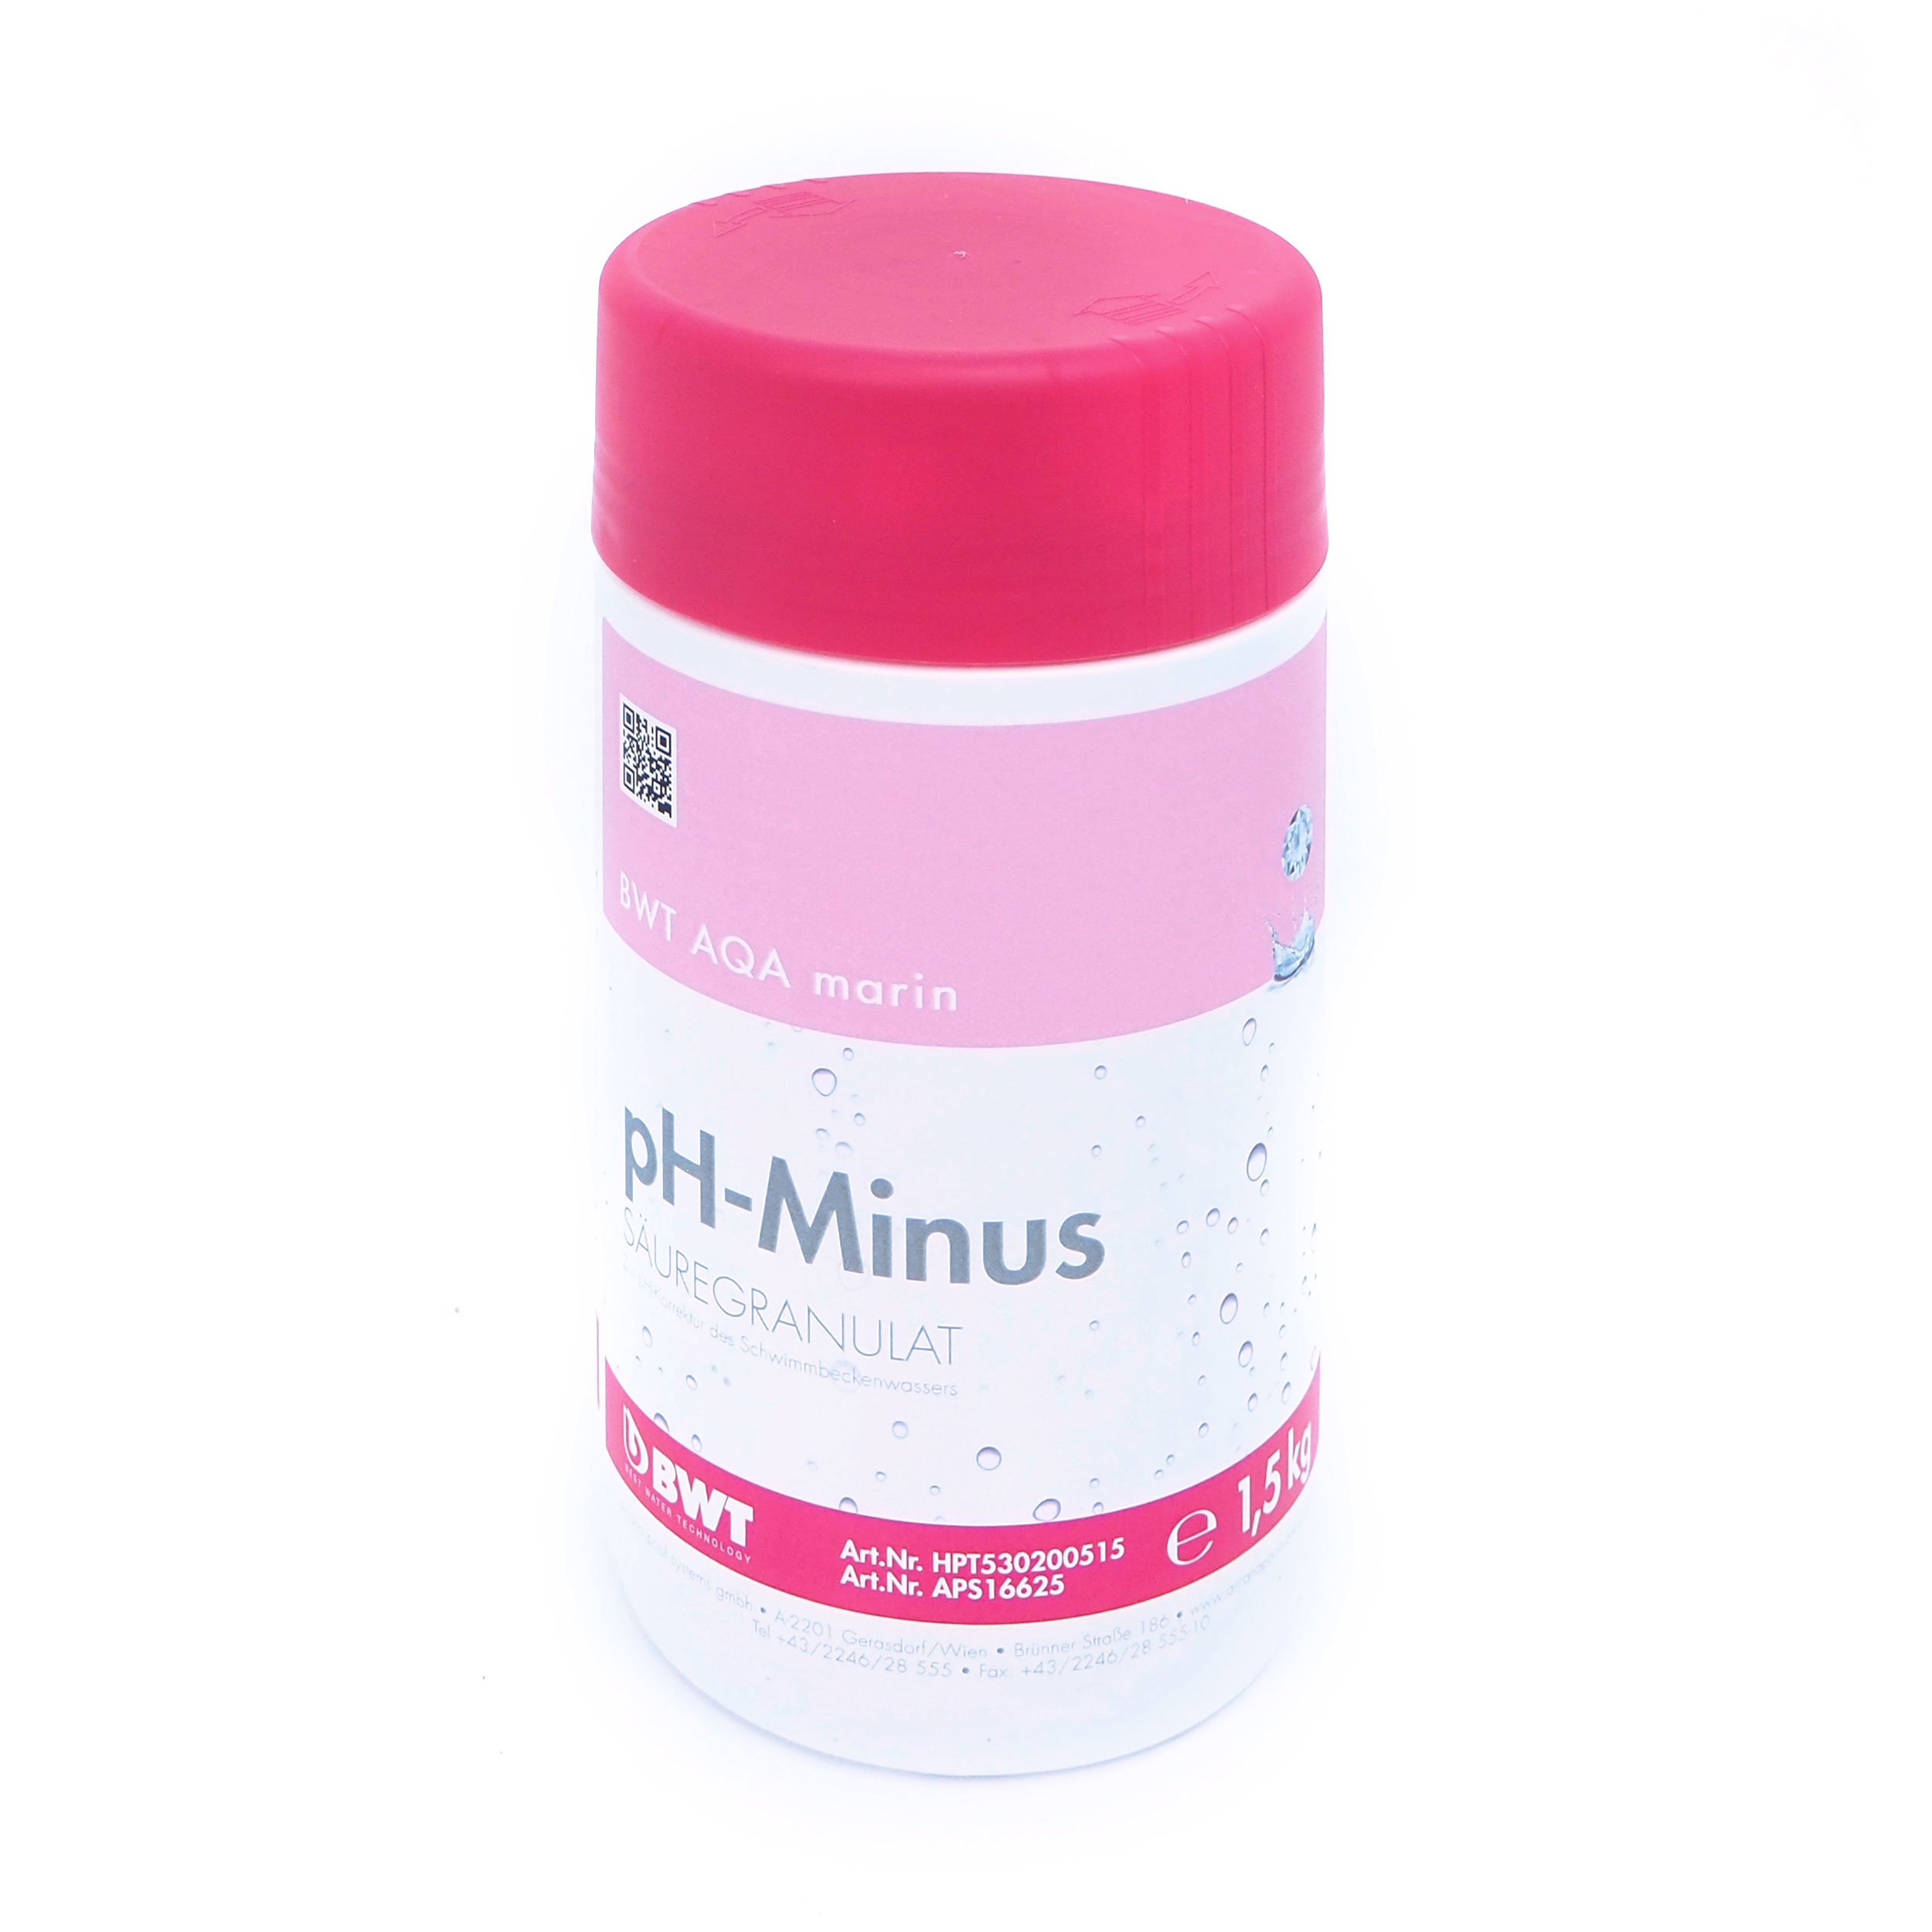 AQA marin pH-Minus Säuregranulat 1,5 kg